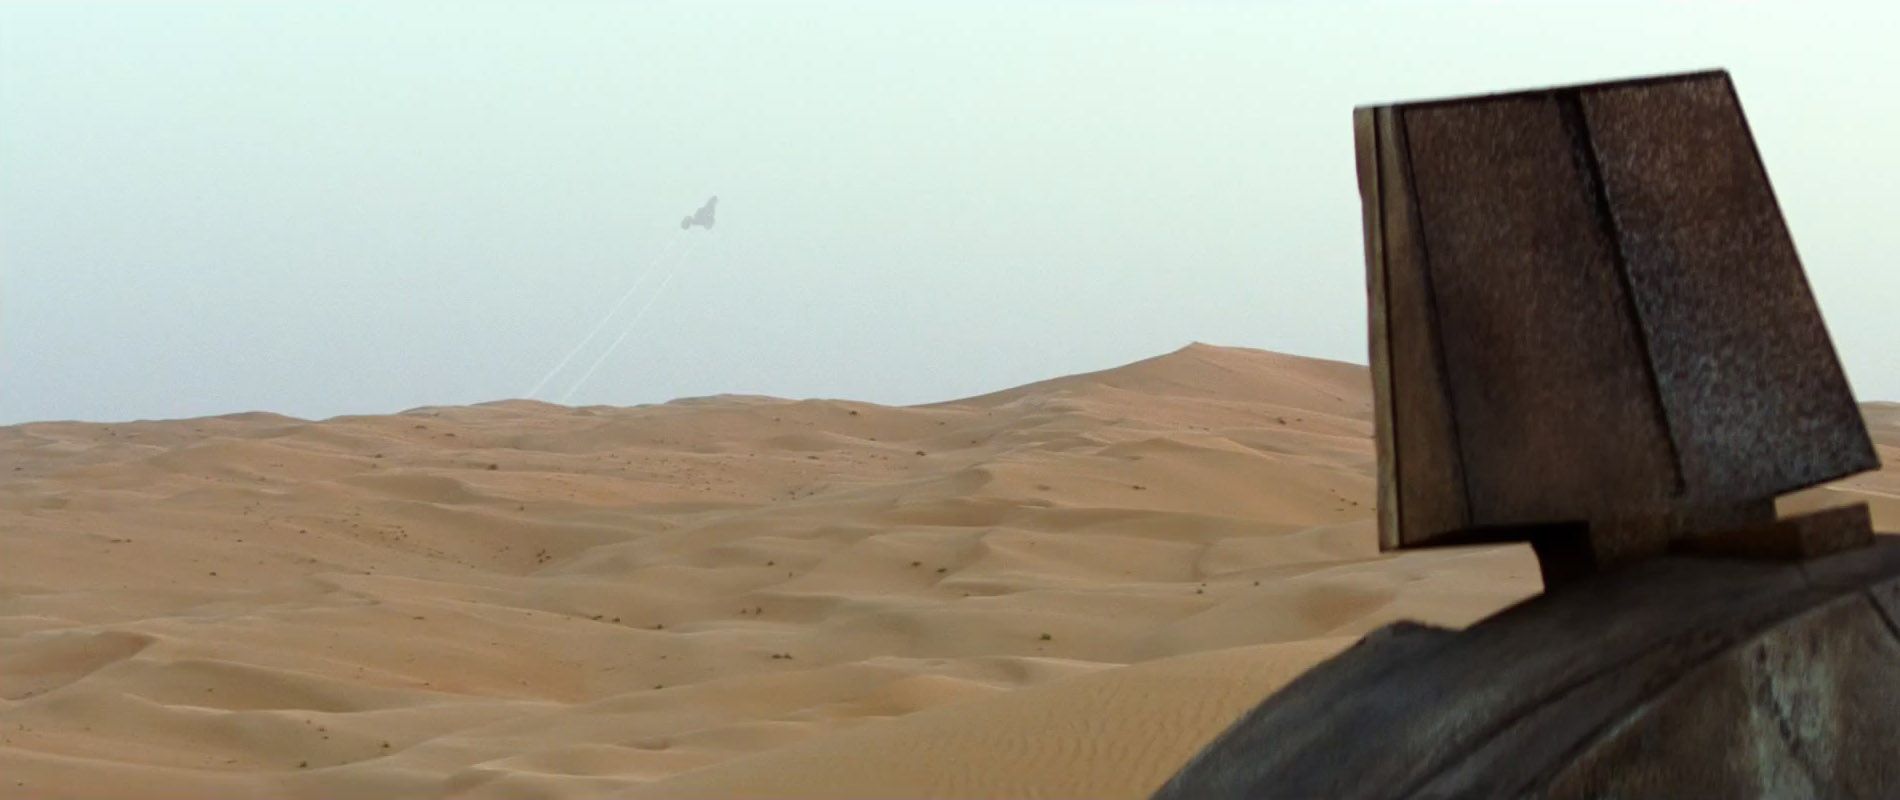 Star Wars 7 Trailer #3 - Rey Views Ship in Distance on Jakku